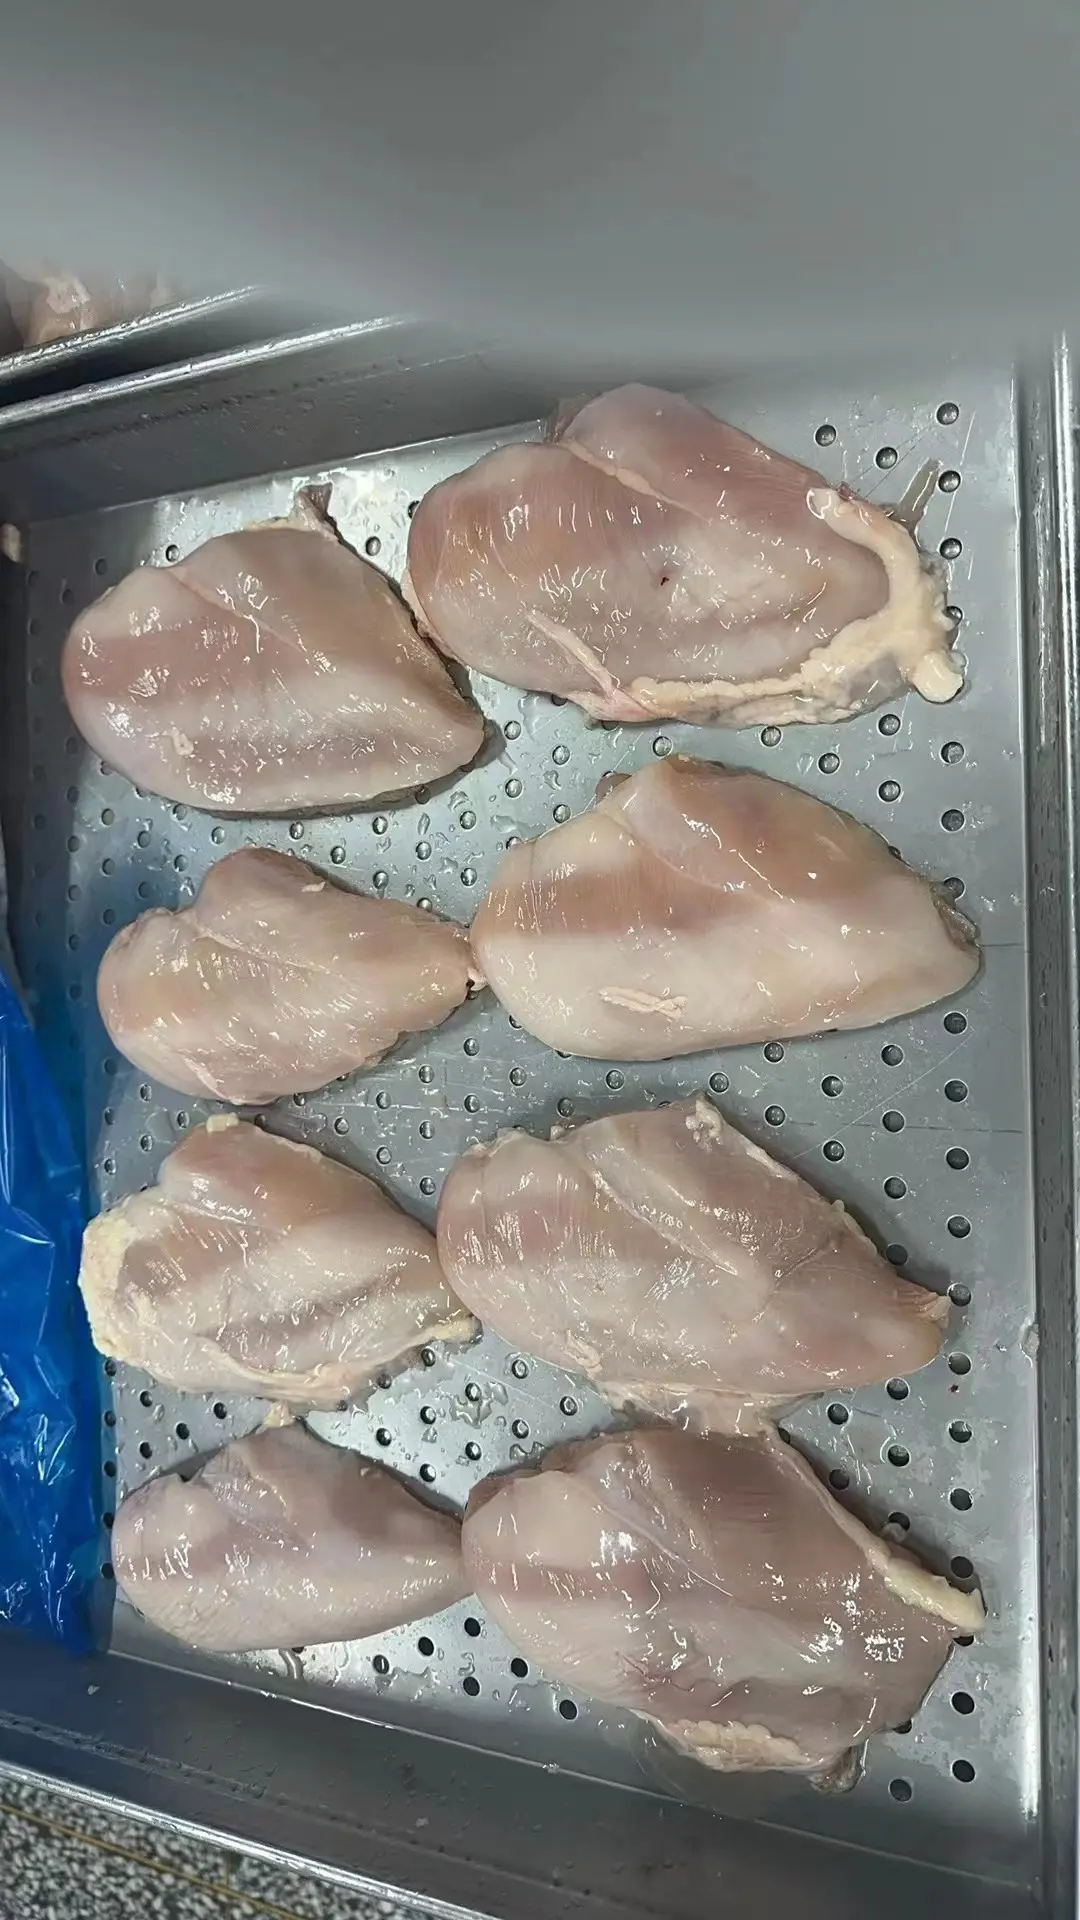 Peito de galinha congelada